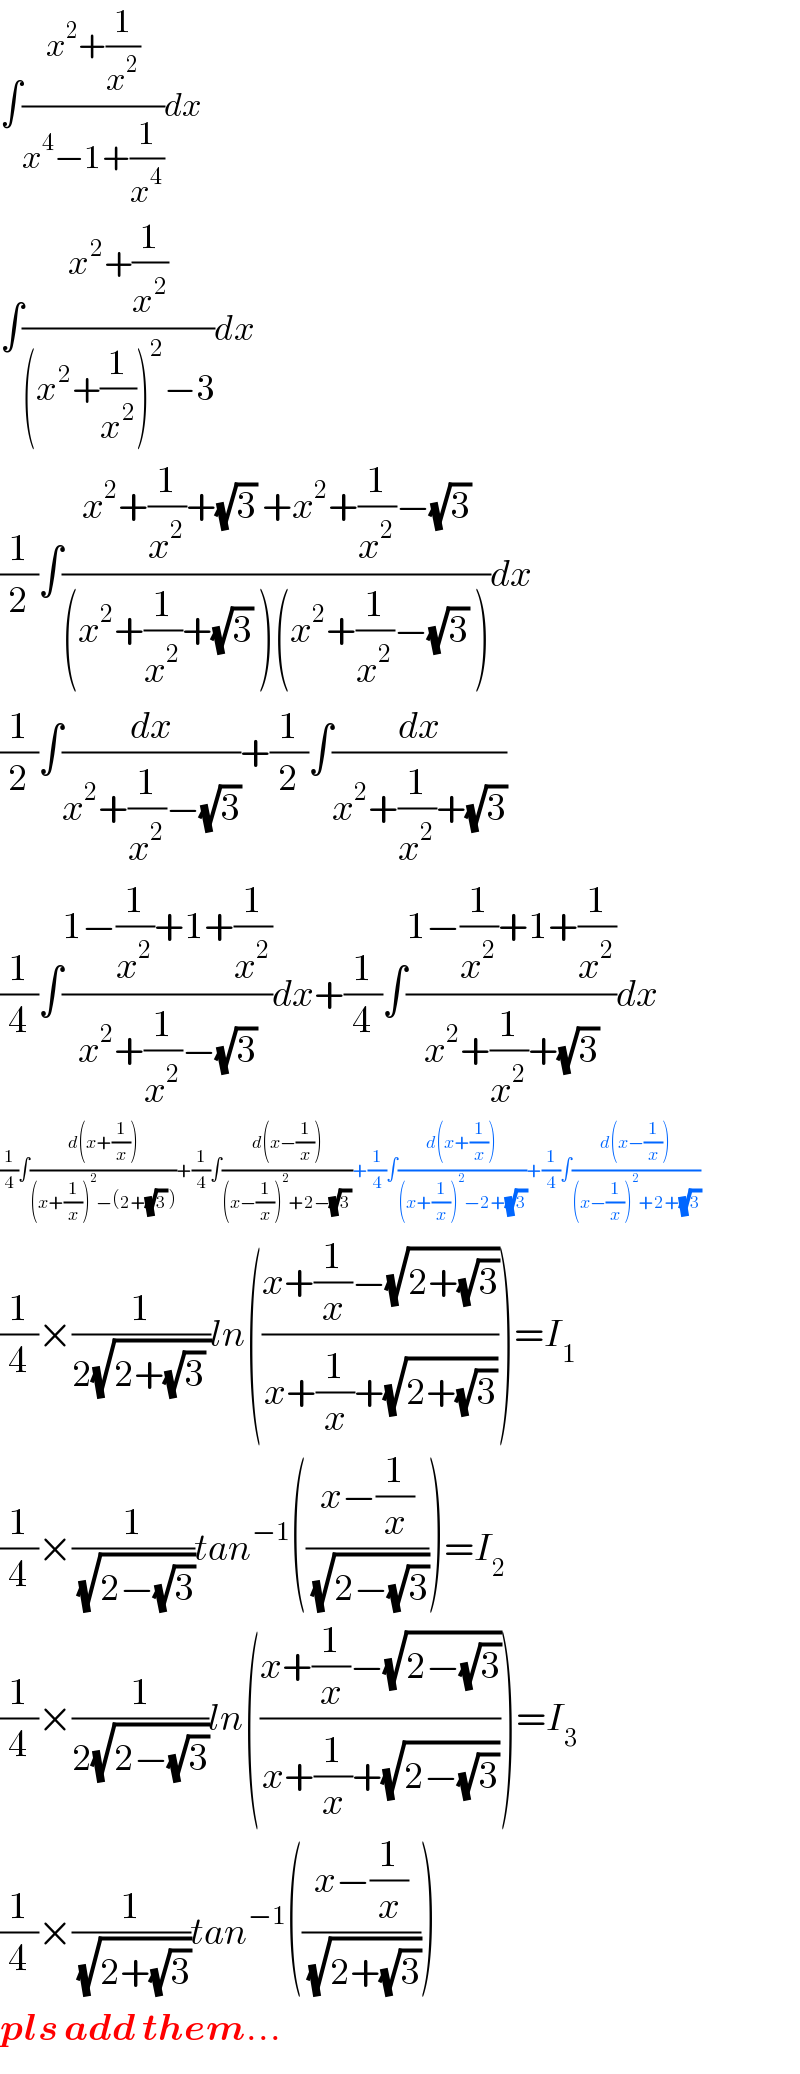 ∫((x^2 +(1/x^2 ))/(x^4 −1+(1/x^4 )))dx  ∫((x^2 +(1/x^2 ))/((x^2 +(1/x^2 ))^2 −3))dx  (1/2)∫((x^2 +(1/x^2 )+(√3) +x^2 +(1/x^2 )−(√3))/((x^2 +(1/x^2 )+(√3) )(x^2 +(1/x^2 )−(√3) )))dx  (1/2)∫(dx/(x^2 +(1/x^2 )−(√3)))+(1/2)∫(dx/(x^2 +(1/x^2 )+(√3)))  (1/4)∫((1−(1/x^2 )+1+(1/x^2 ))/(x^2 +(1/x^2 )−(√3)))dx+(1/4)∫((1−(1/x^2 )+1+(1/x^2 ))/(x^2 +(1/x^2 )+(√3)))dx  (1/4)∫((d(x+(1/x)))/((x+(1/x))^2 −(2+(√3) )))+(1/4)∫((d(x−(1/x)))/((x−(1/x))^2 +2−(√3) ))+(1/4)∫((d(x+(1/x)))/((x+(1/x))^2 −2+(√3)))+(1/4)∫((d(x−(1/x)))/((x−(1/x))^2 +2+(√3)))  (1/4)×(1/(2(√(2+(√3) ))))ln(((x+(1/x)−(√(2+(√3))))/(x+(1/x)+(√(2+(√3))))))=I_1   (1/4)×(1/(√(2−(√3))))tan^(−1) (((x−(1/x))/(√(2−(√3)))))=I_2   (1/4)×(1/(2(√(2−(√3)))))ln(((x+(1/x)−(√(2−(√3))))/(x+(1/x)+(√(2−(√3))))))=I_3   (1/4)×(1/(√(2+(√3))))tan^(−1) (((x−(1/x))/(√(2+(√3)))))  pls add them...  